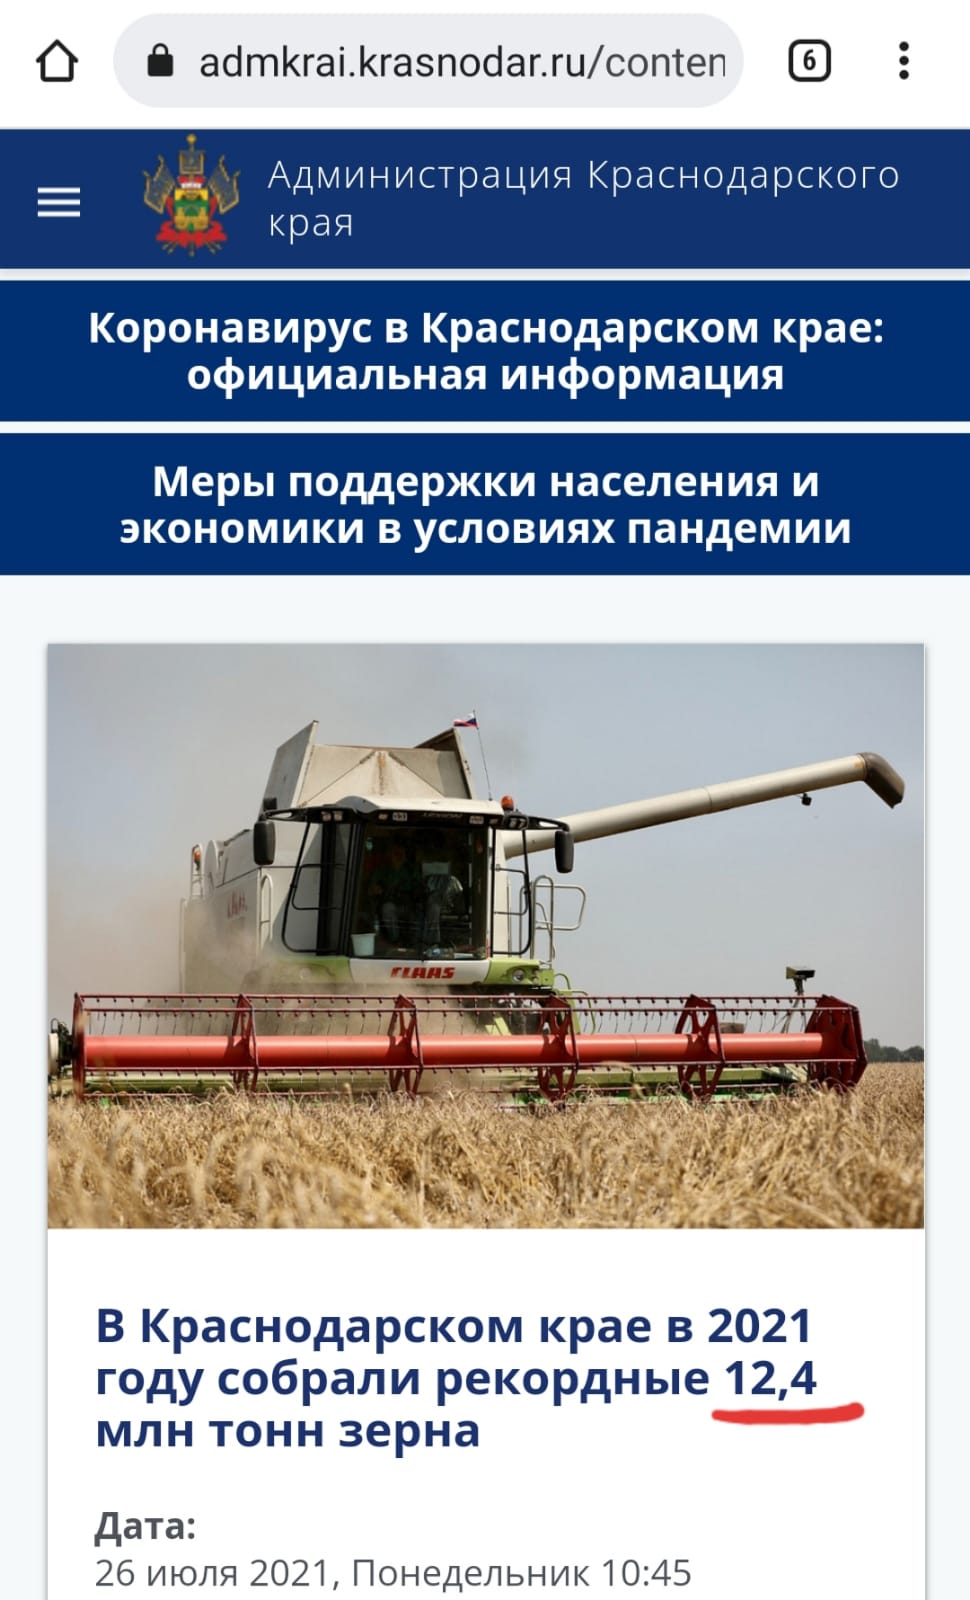 На Кубани представили «рекордный» урожай пшеницы. Вместе с горохом